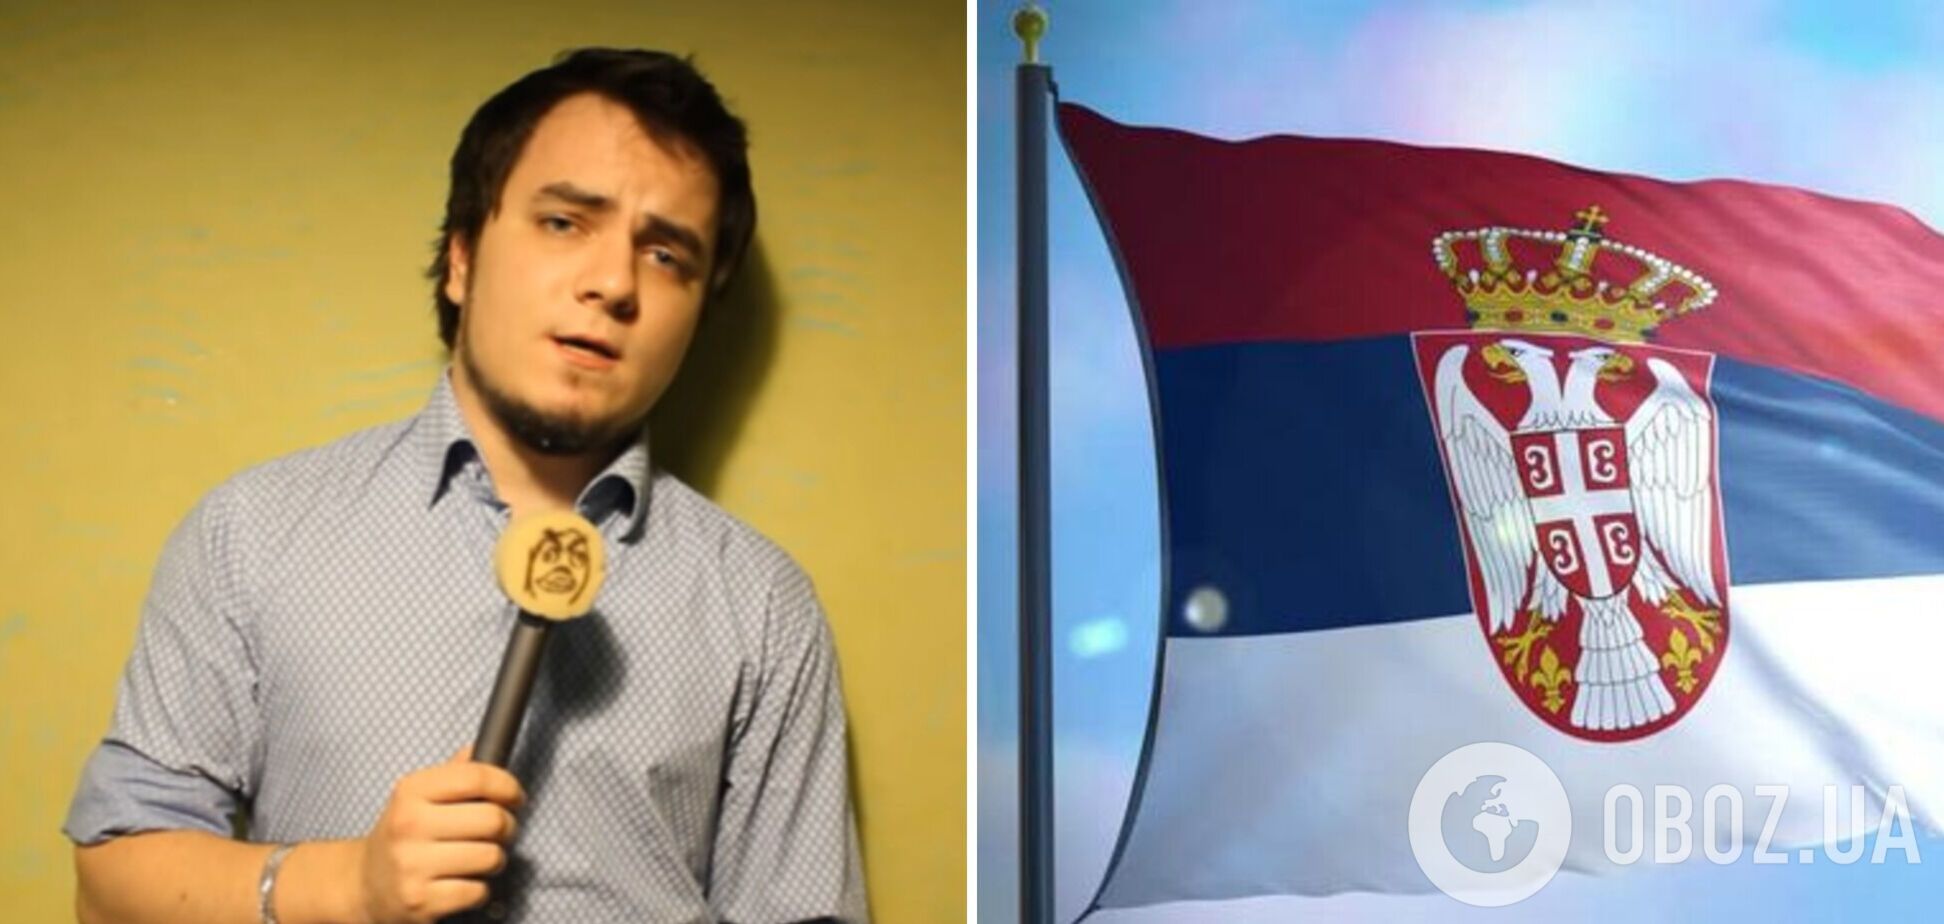 Скандального антиукраинского блогера Илью Мэддисона, сбежавшего от мобилизации в РФ, выгнали из Сербии